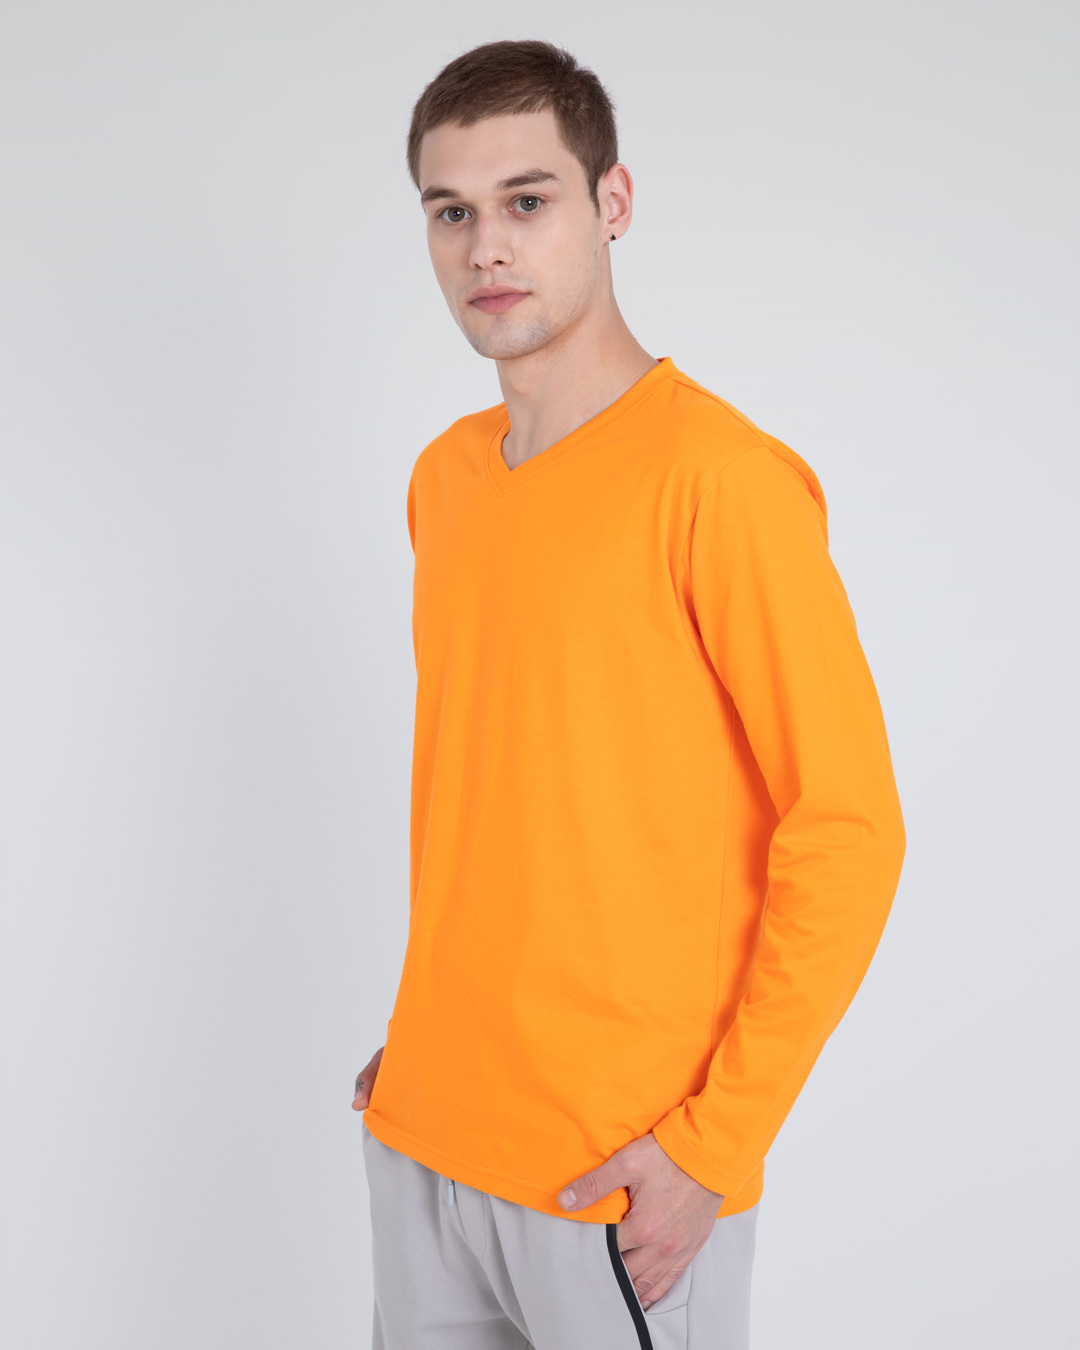 Buy Neon Orange V-Neck Full Sleeve T-Shirt for Men orange Online at ...